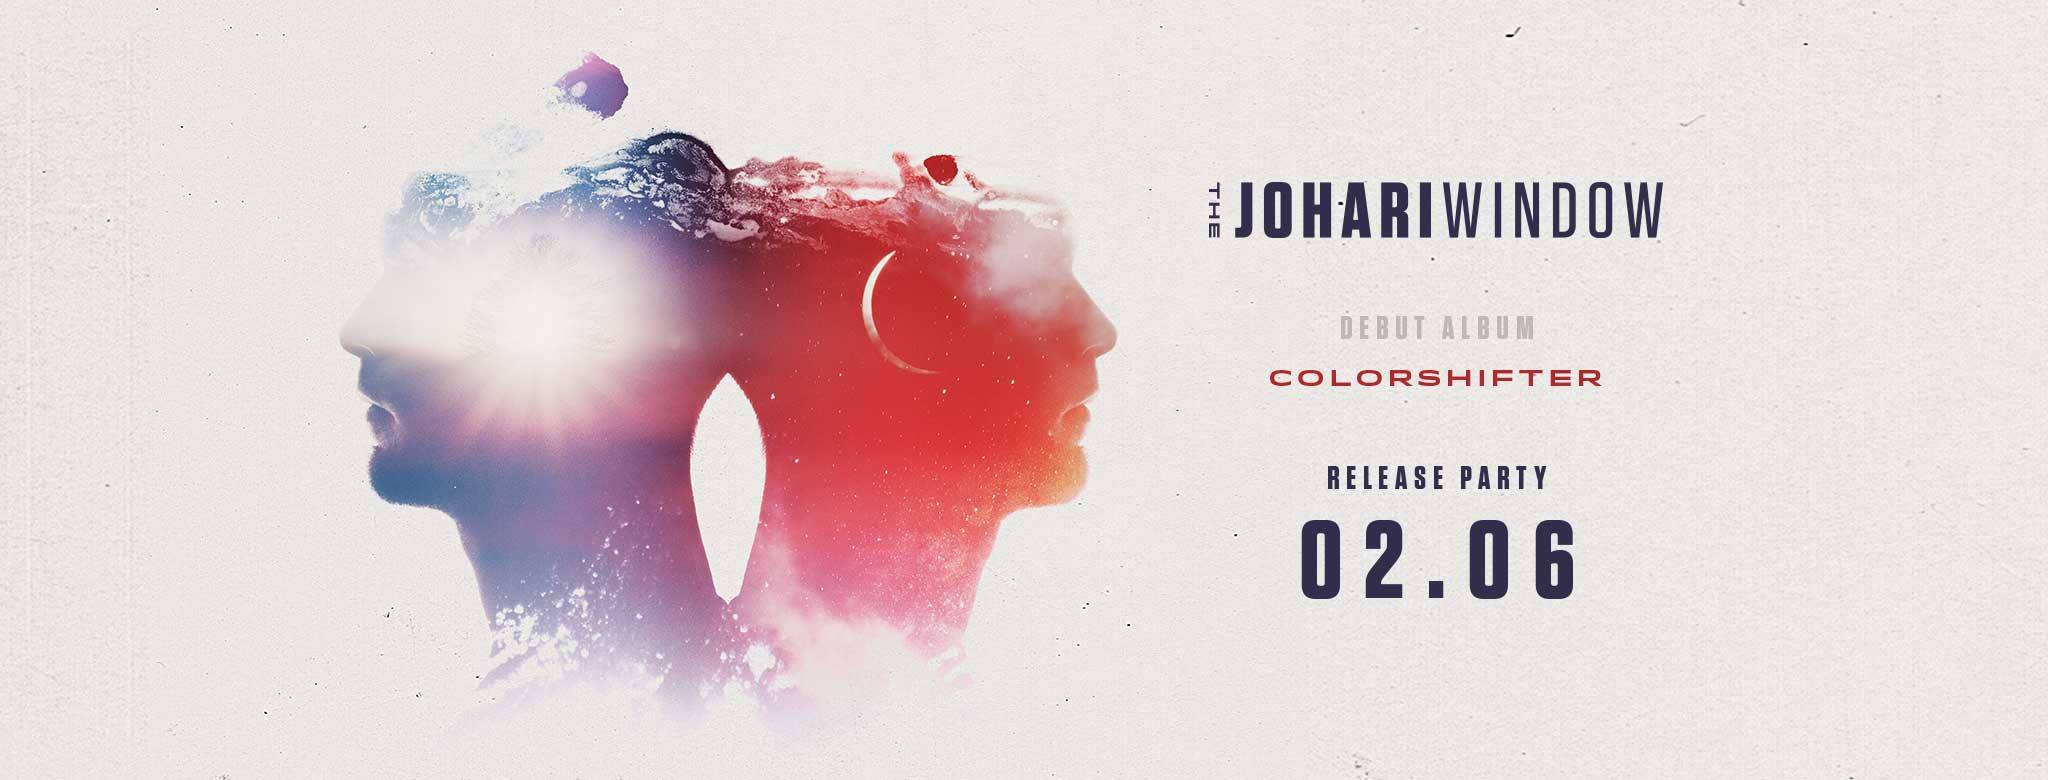 18 05 31 The Johari Window Cinema Zaterdag 2 juni 2018